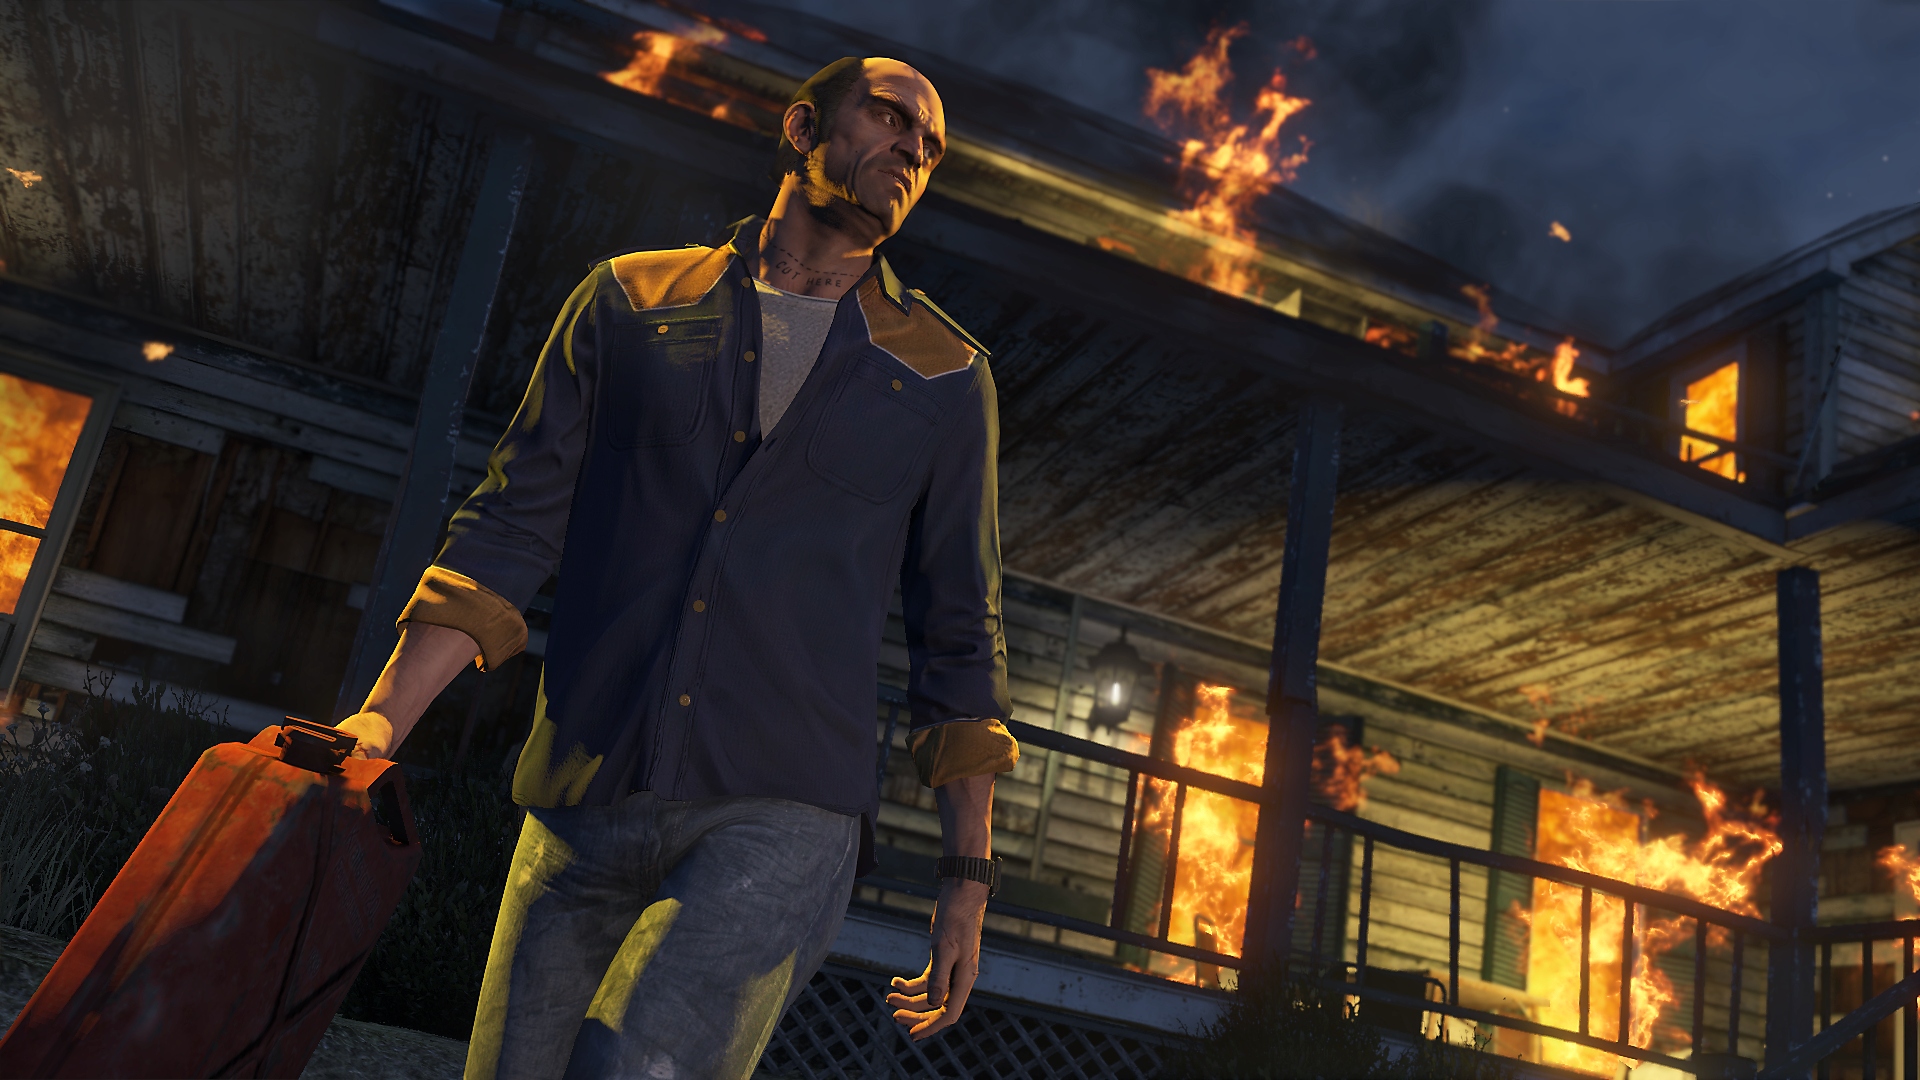 Grand Theft Auto V – skärmbild som visar när huvudpersonen Trevor springer iväg från en brinnande byggnad med en bensindunk i handen